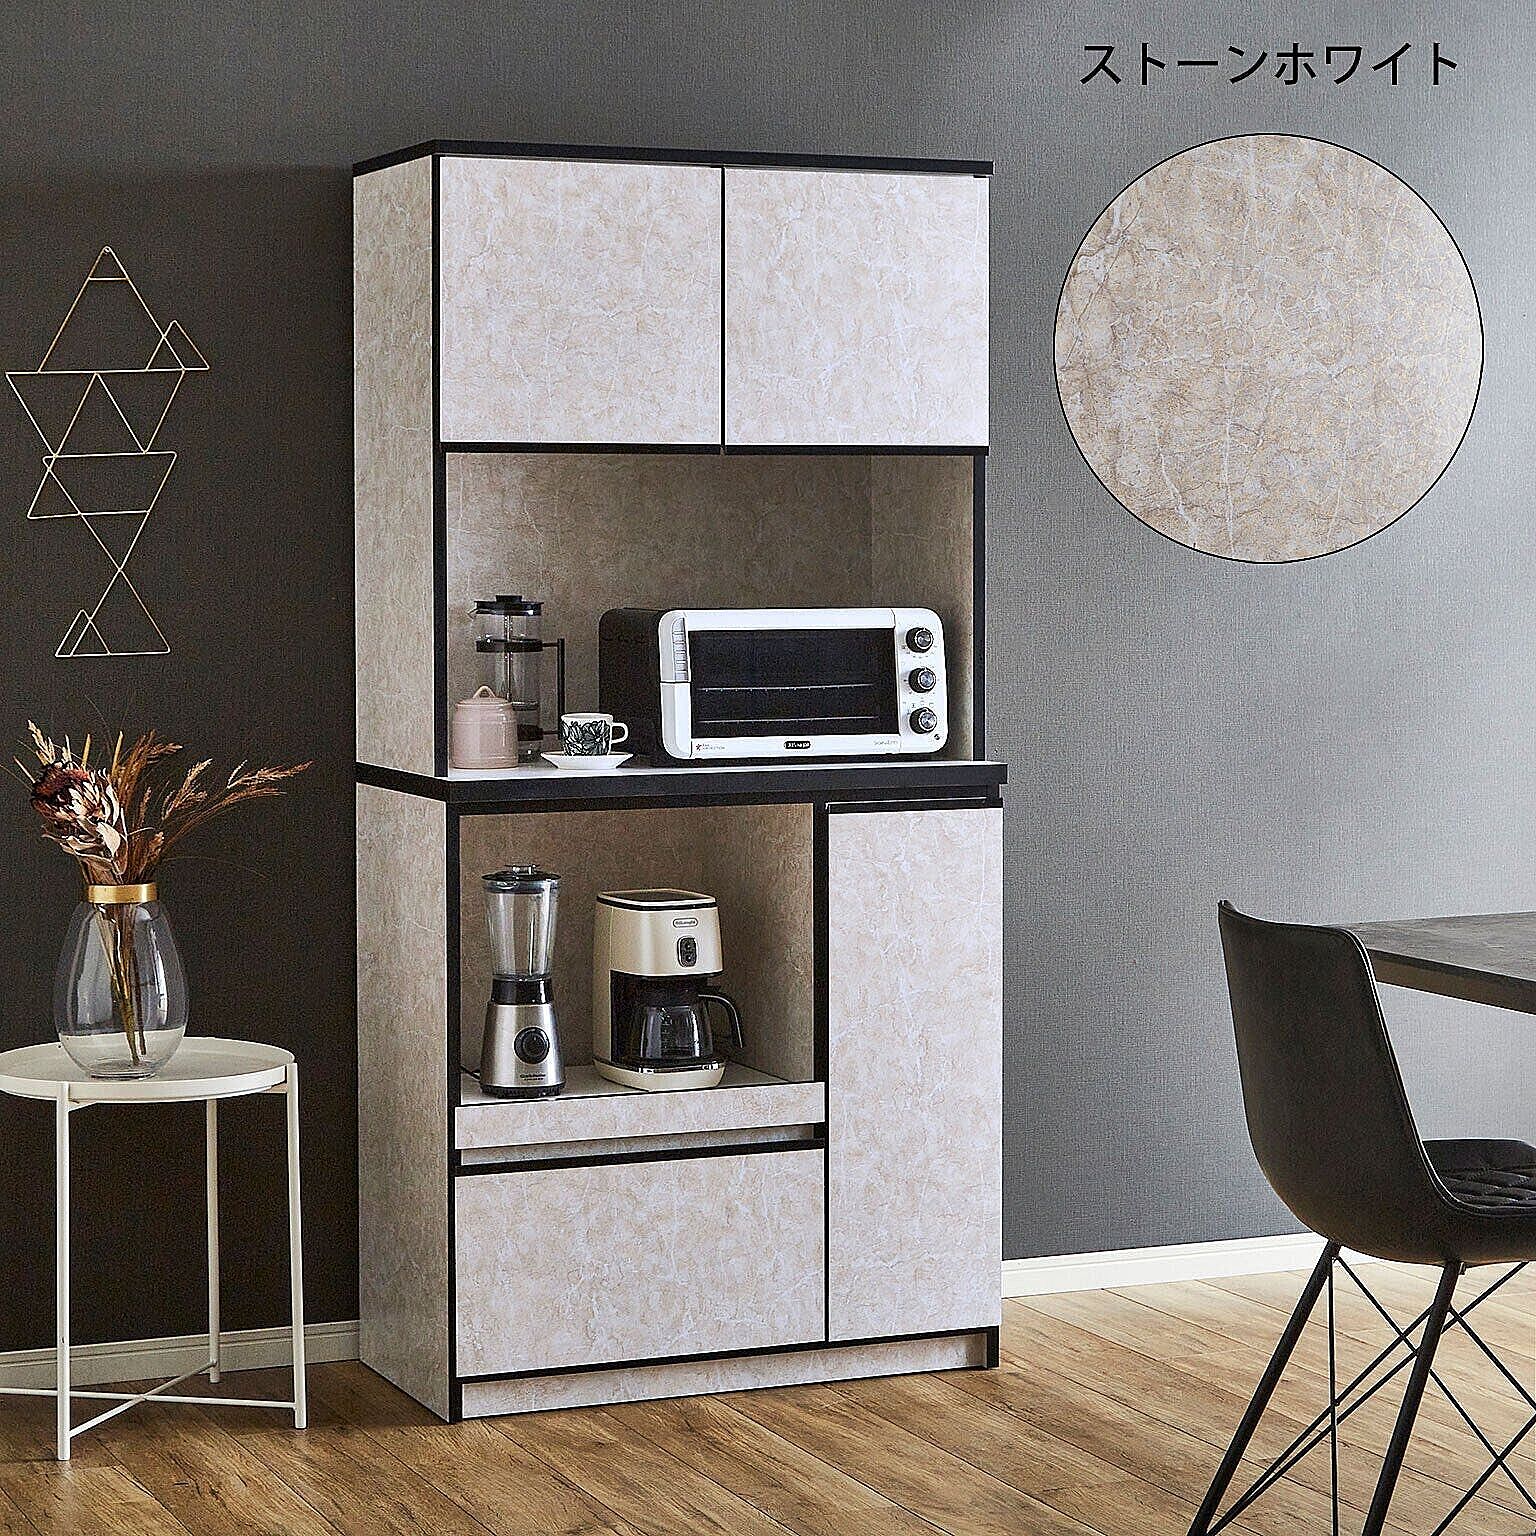 食器棚 レンジ台 キッチンボード レンジボード ナポリ90 完成品 幅88.8cm キッチン収納 日本製